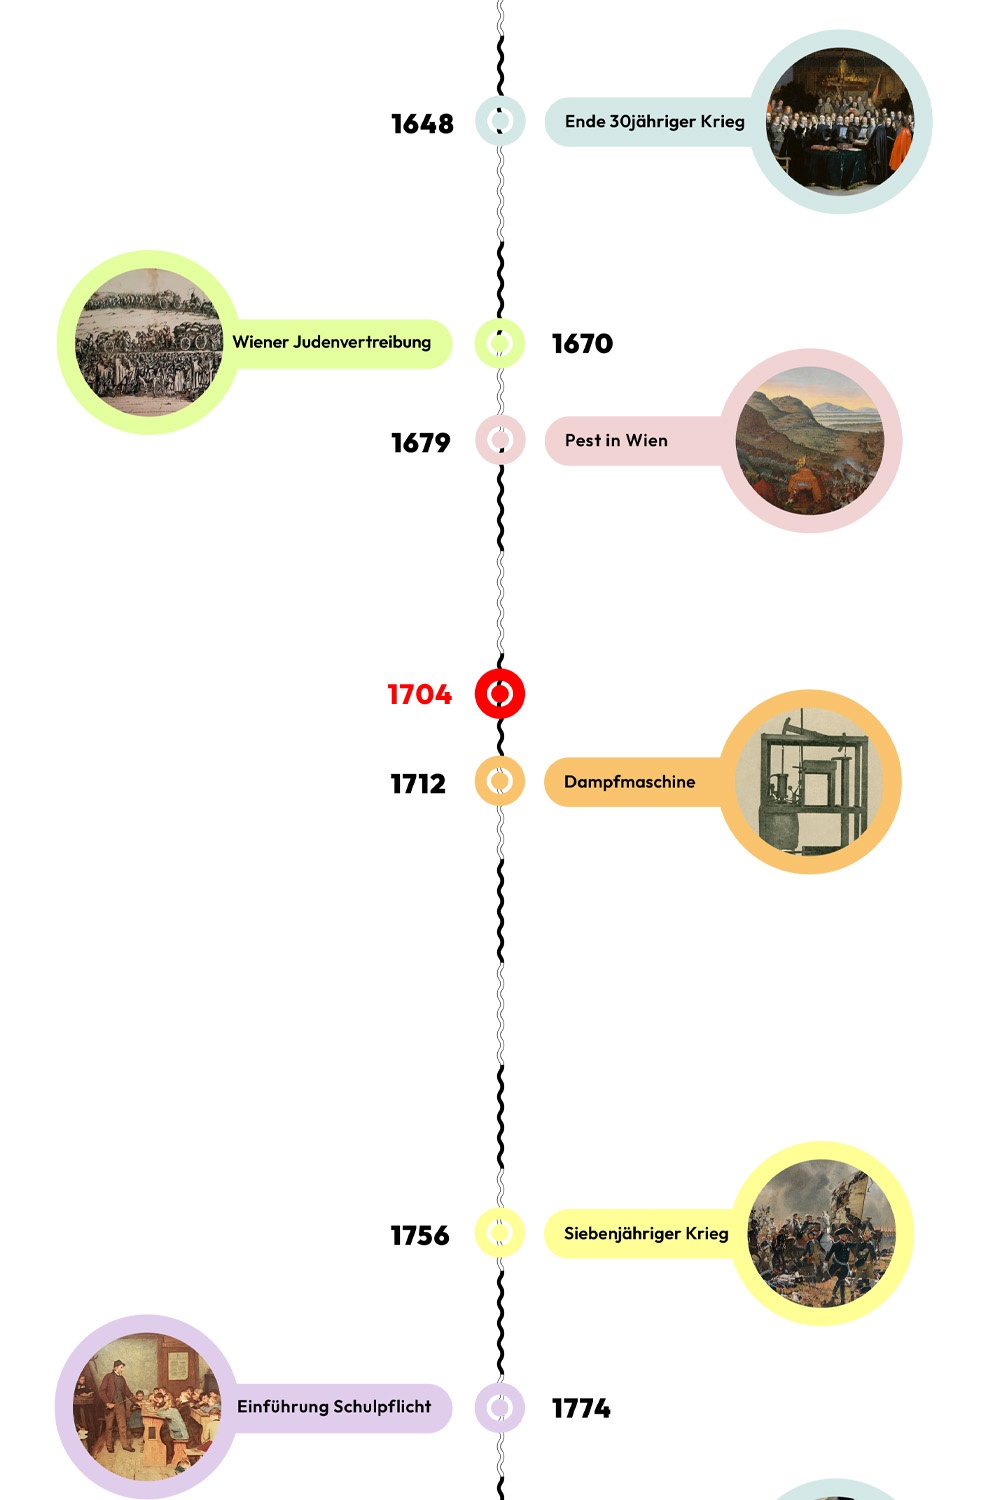 Zeitstrahl mit historischen Ereignissen - 1704 ist hervorgehoben © wasbishergeschah.at